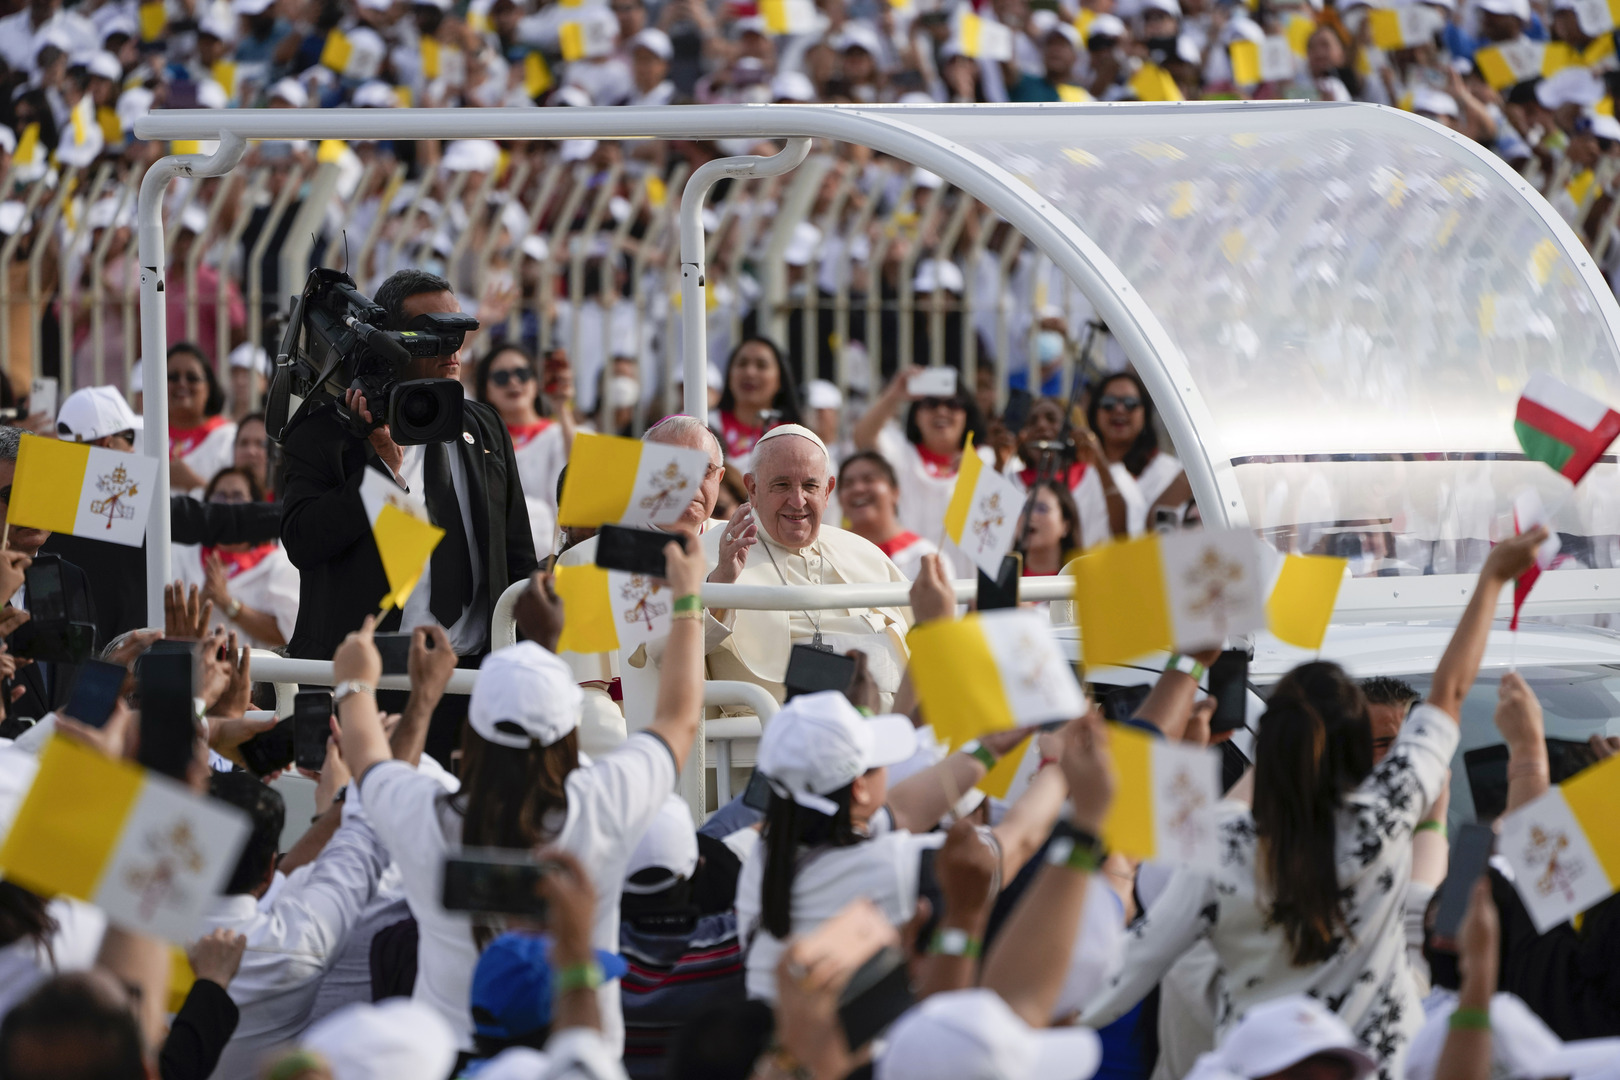 البحرين.. عشرات الآلاف يشاركون في قداس يترأسه البابا فرنسيس (صور)